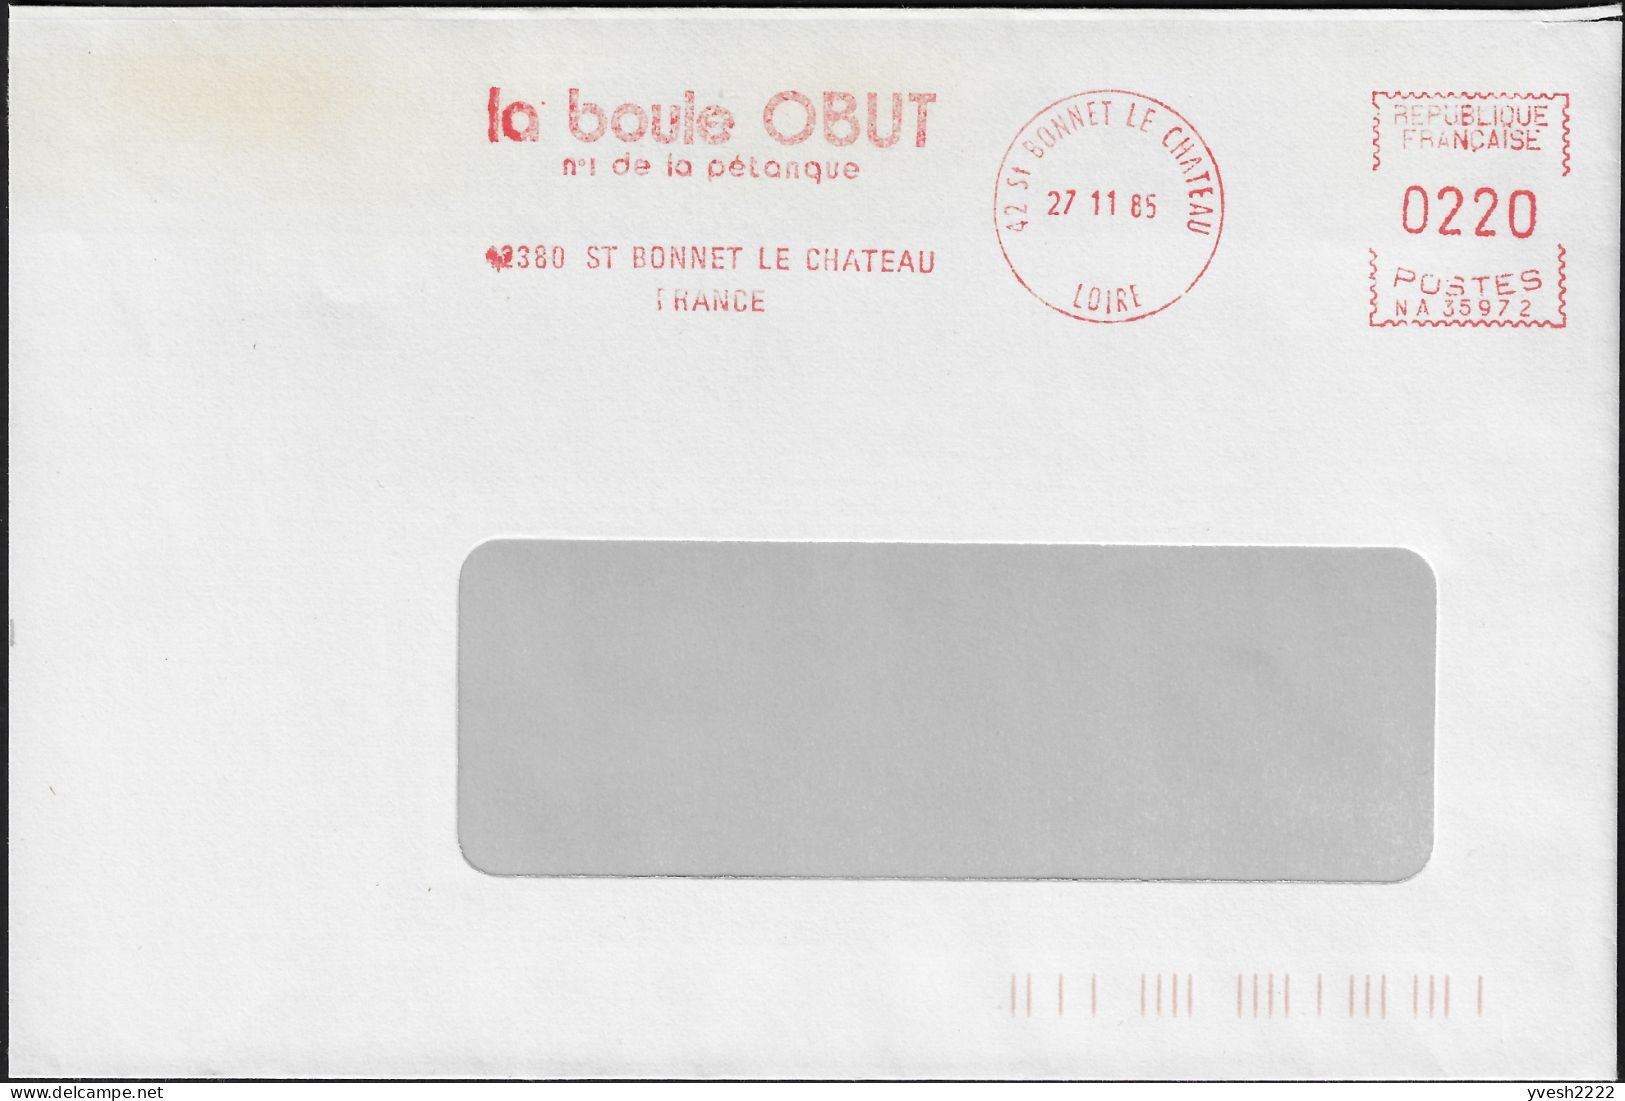 France 1985. Empreinte De Machine à Affranchir Obut. La Boule Obut, N° 1 De La Pétanque - Bocce